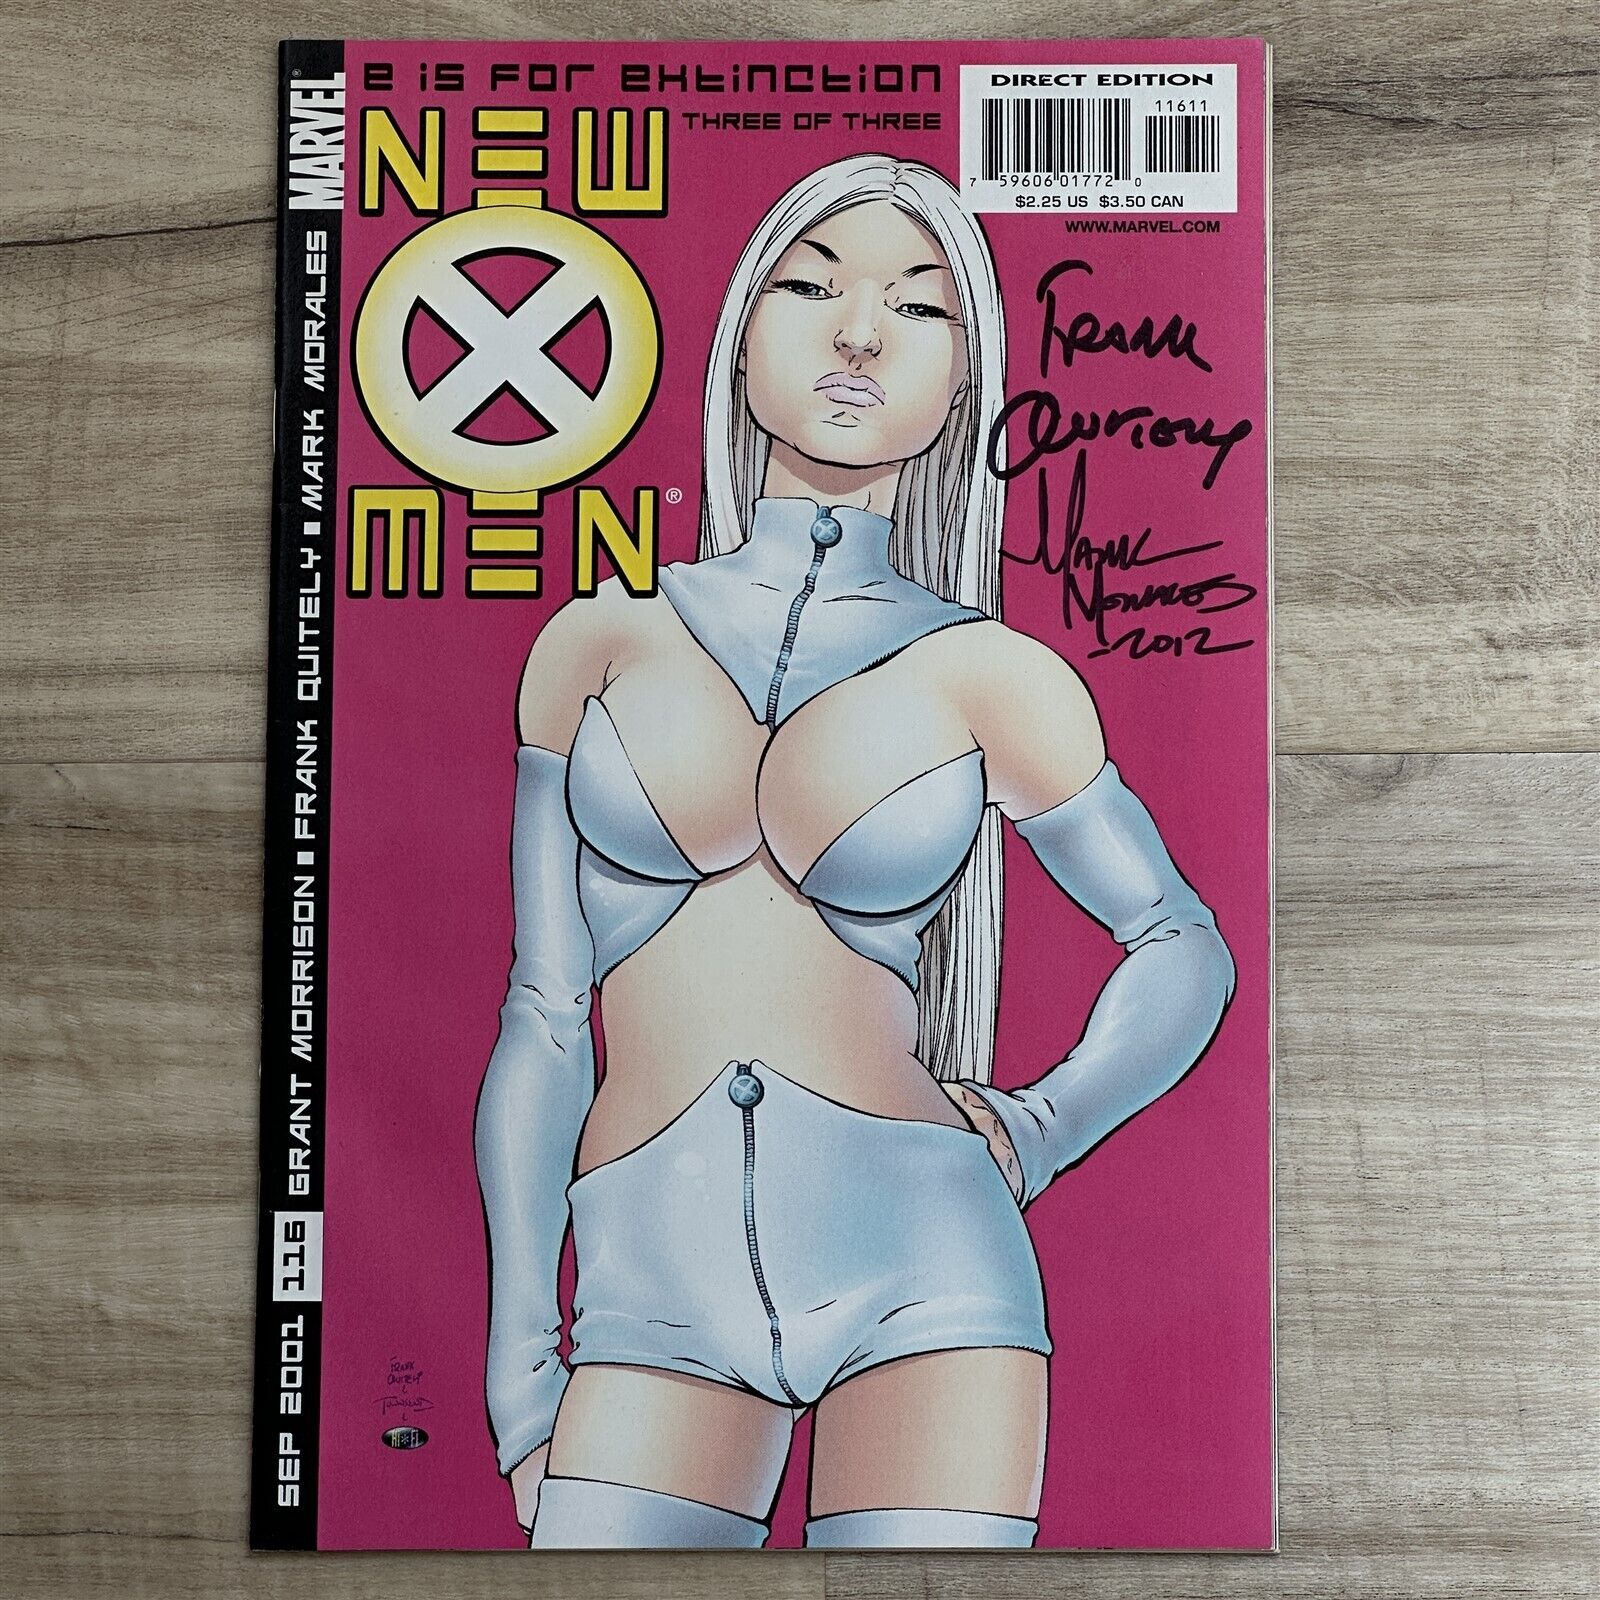 NEW X-MEN #116 2001 SIGNED FRANK QUITELY EMMA FROST GOOD GIRL ART COVER MARVEL